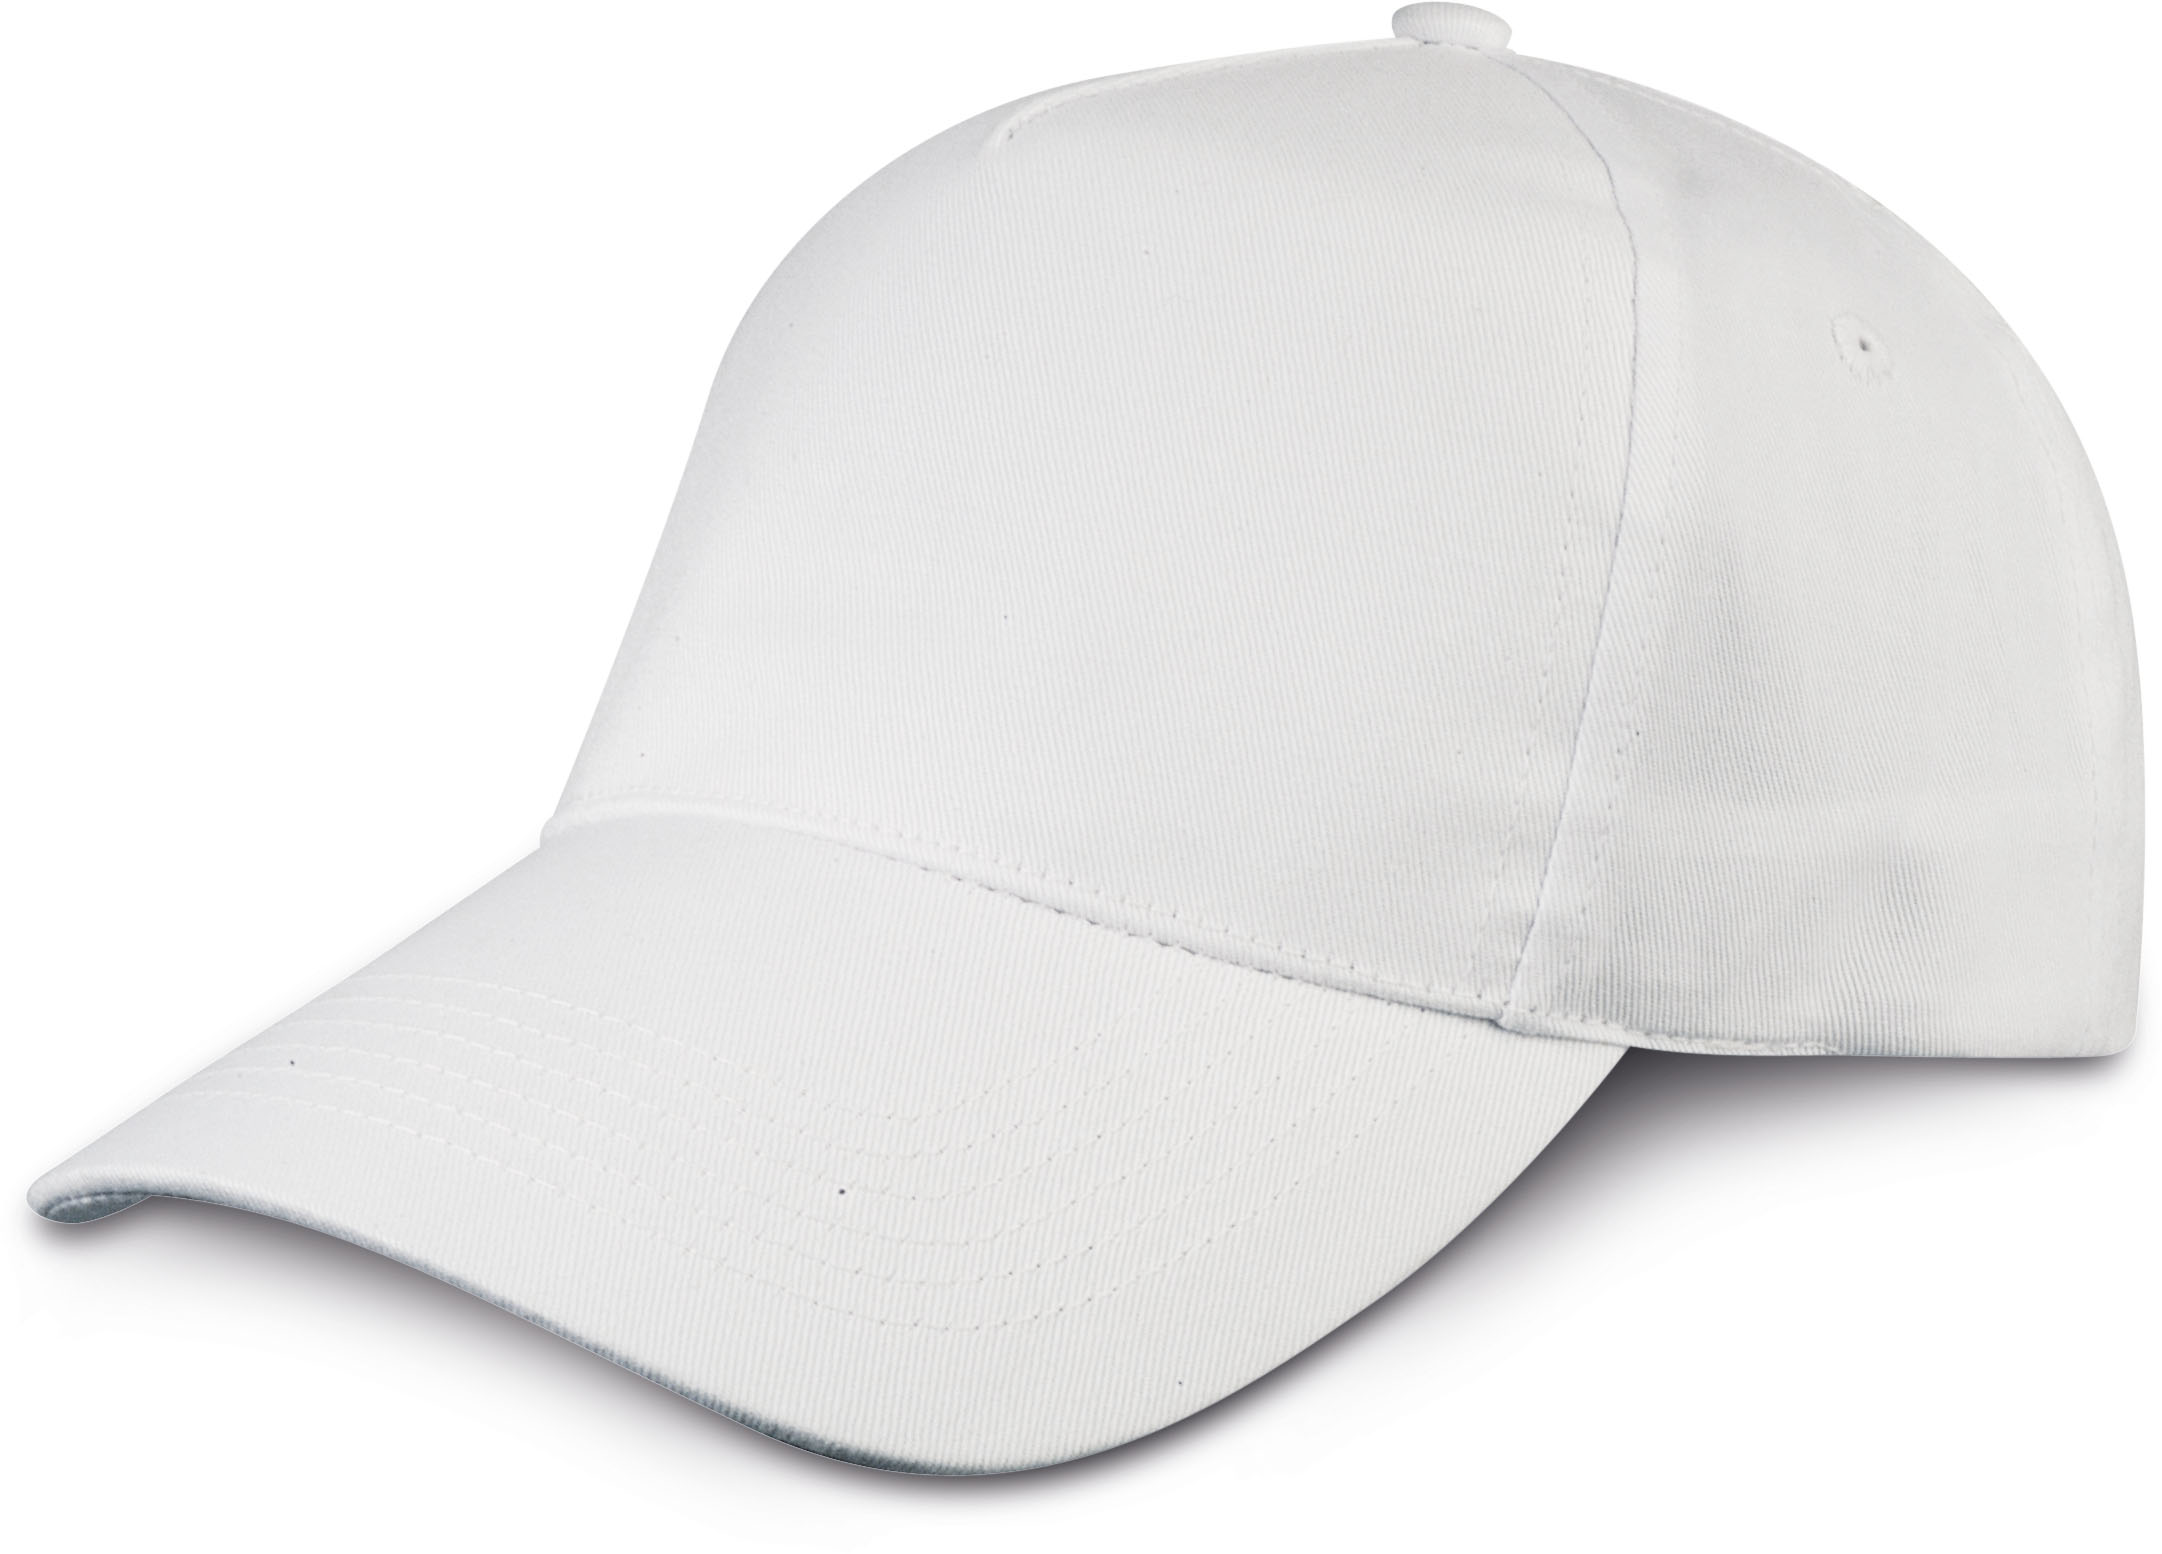 Cappellino 5 pannelli colore bianco da personalizzare con scritte o logo